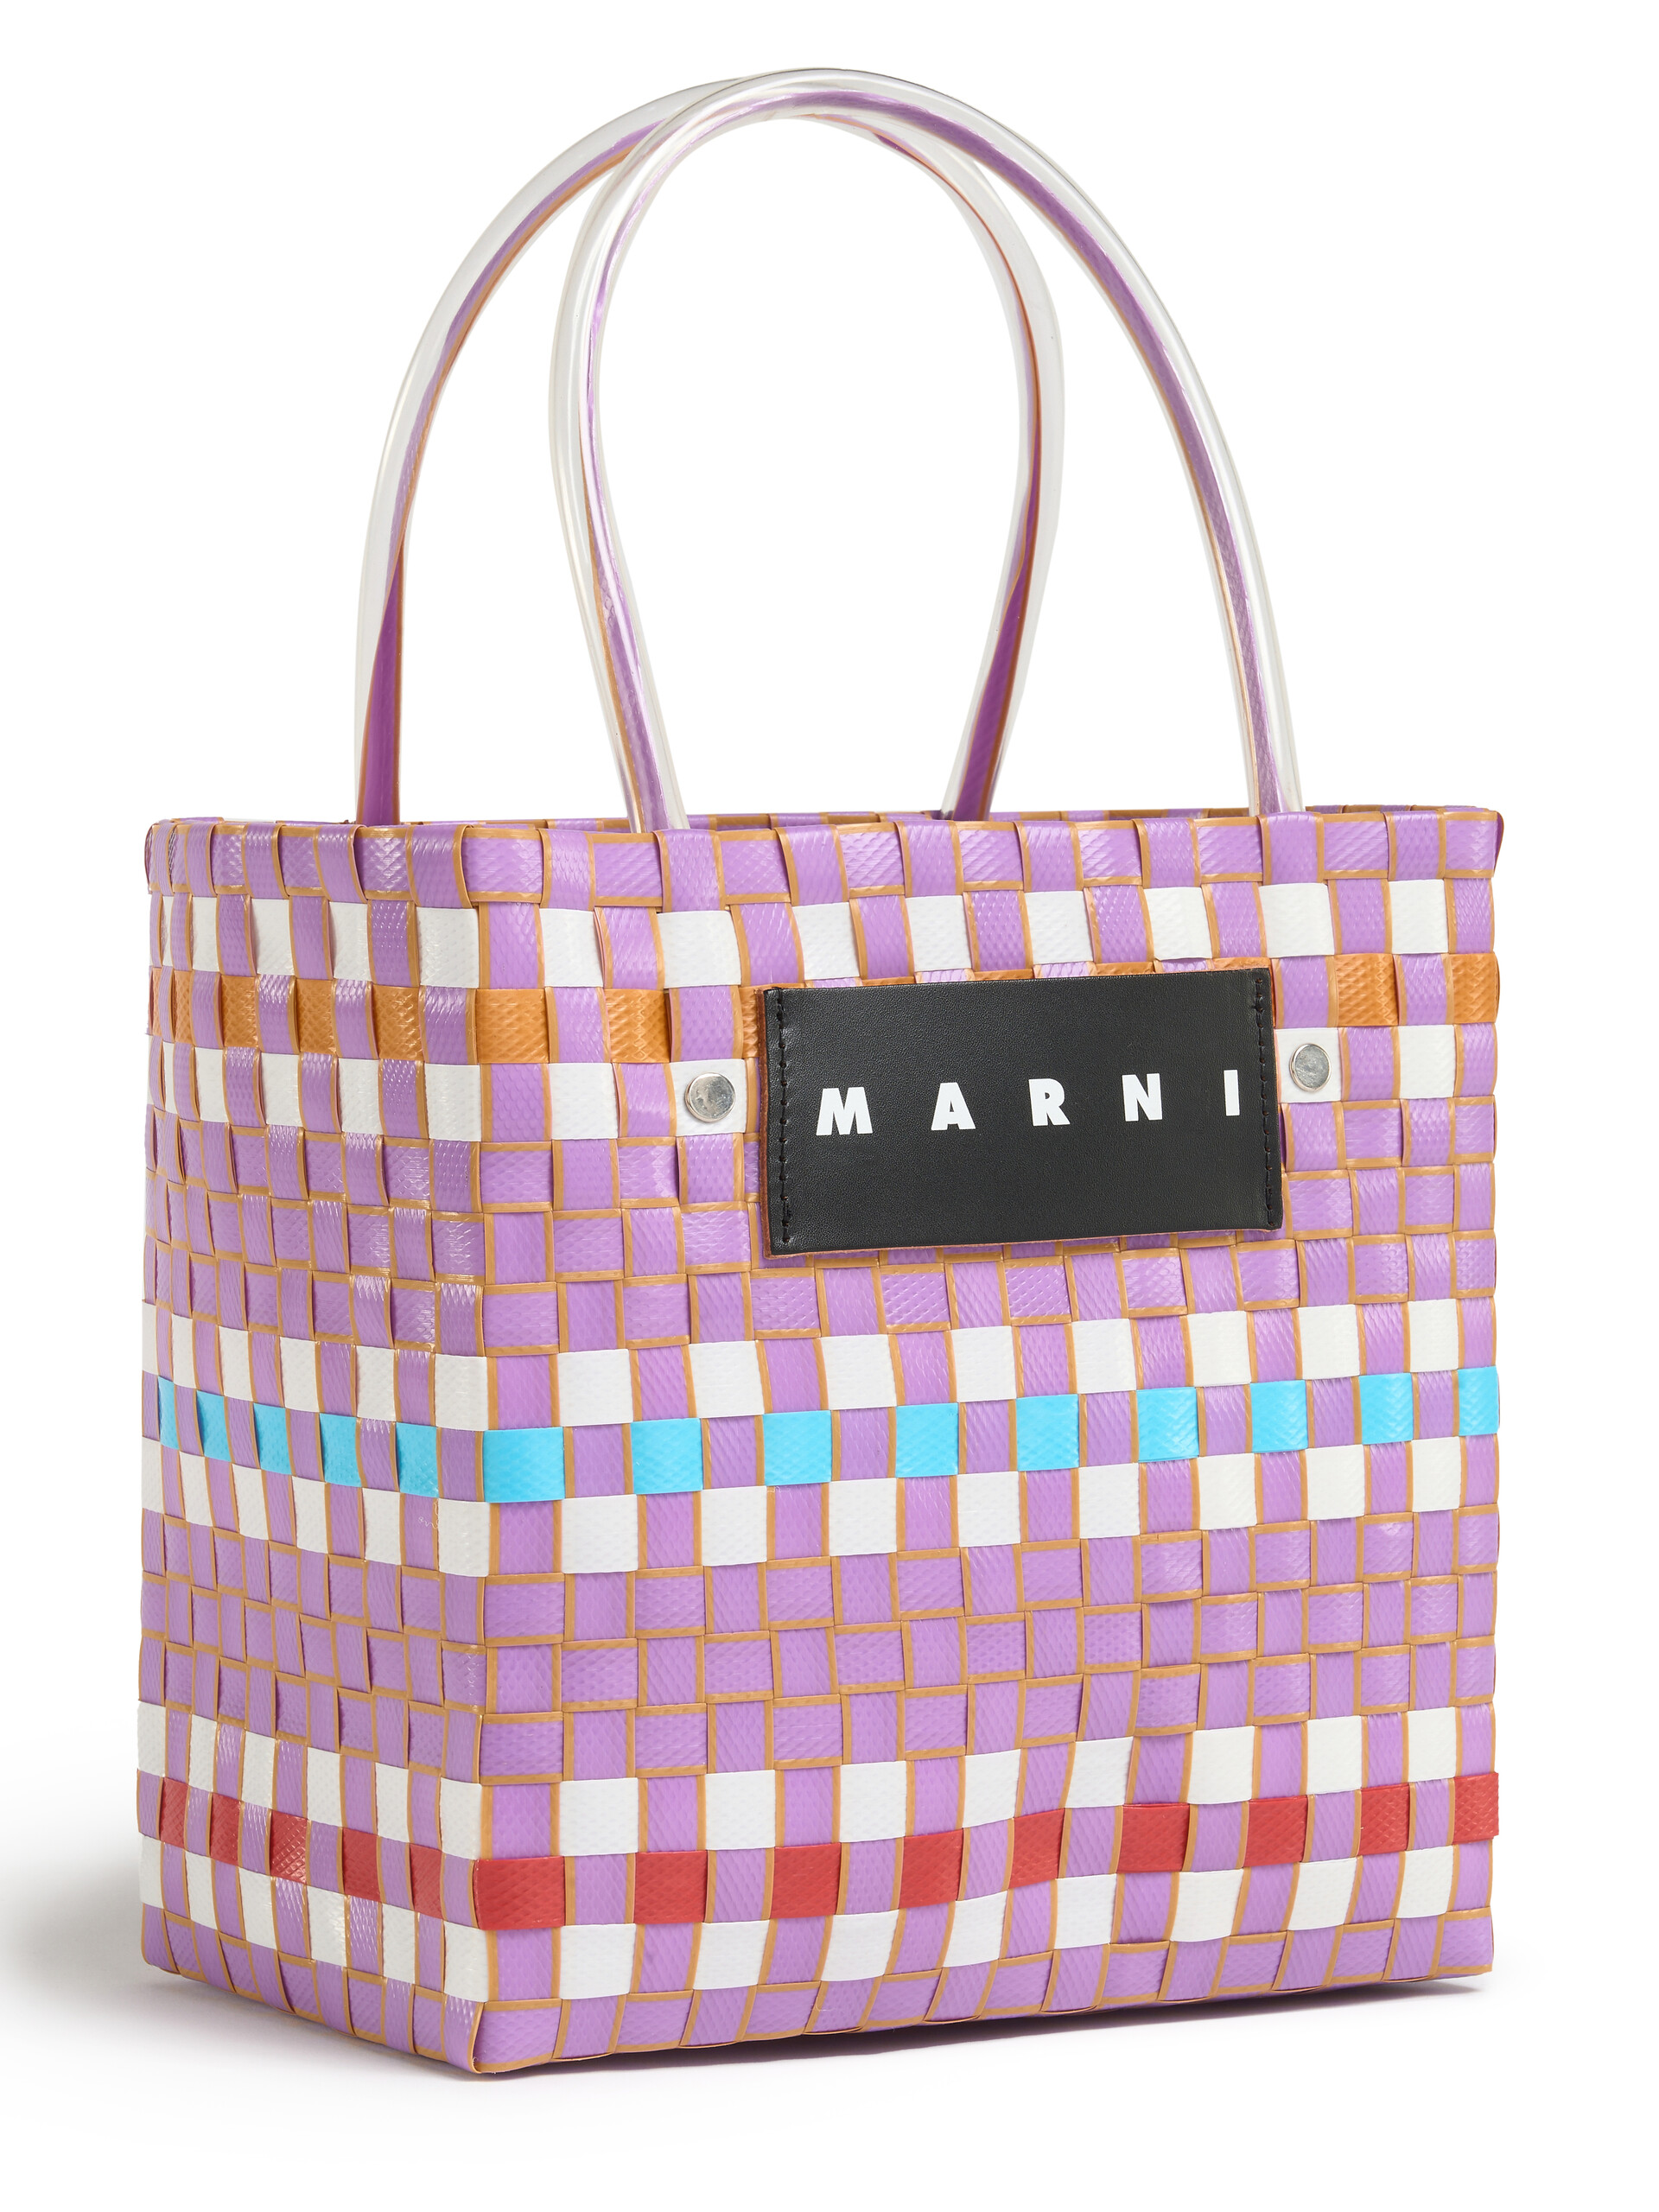 Minibolso MARNI MARKET BASKET multicolor - Bolsos - Image 4